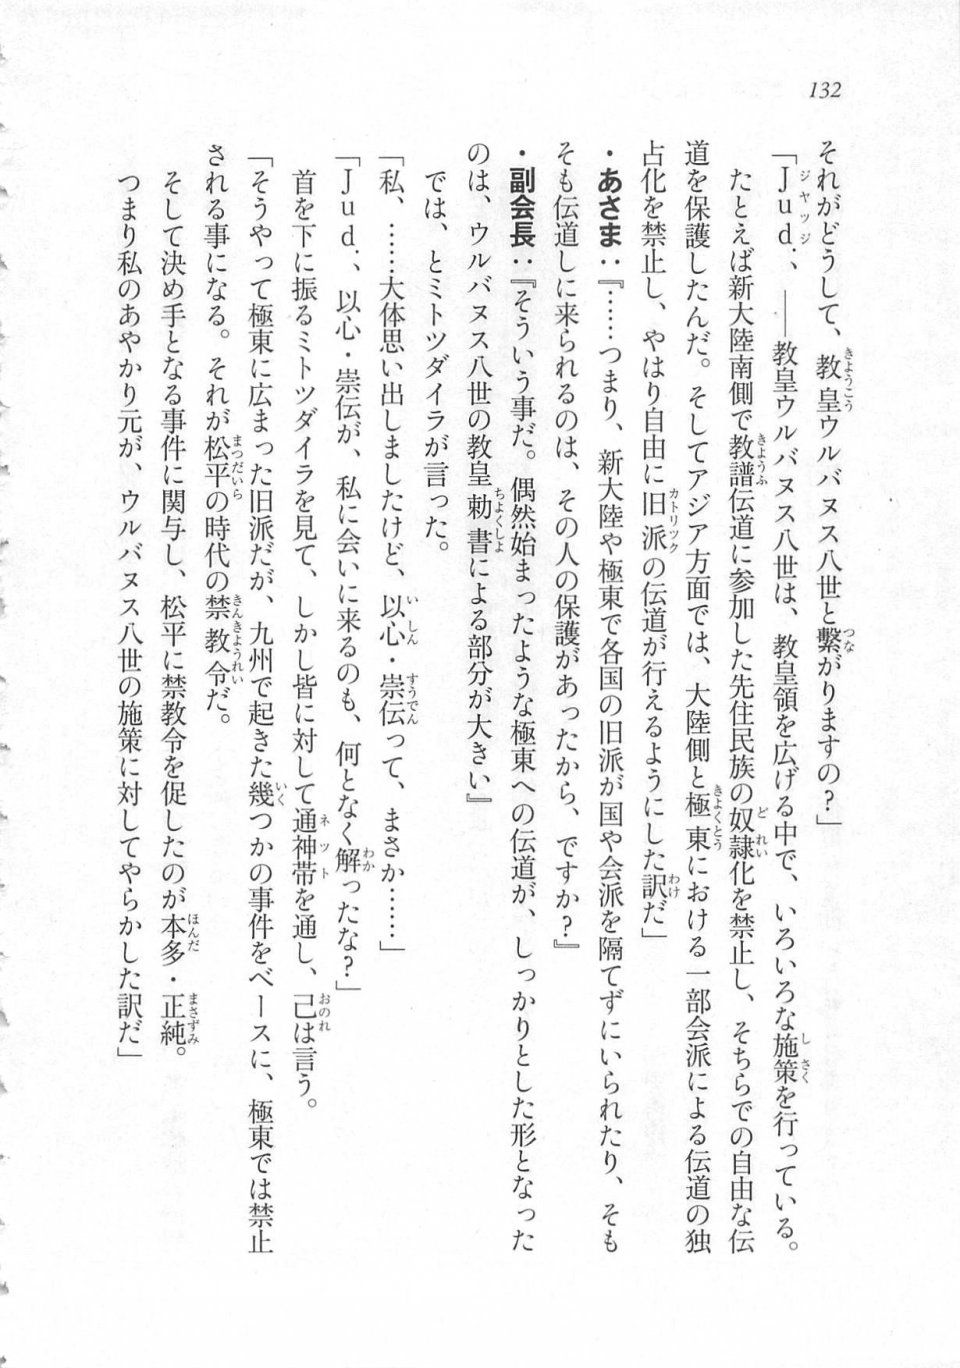 Kyoukai Senjou no Horizon LN Sidestory Vol 3 - Photo #136